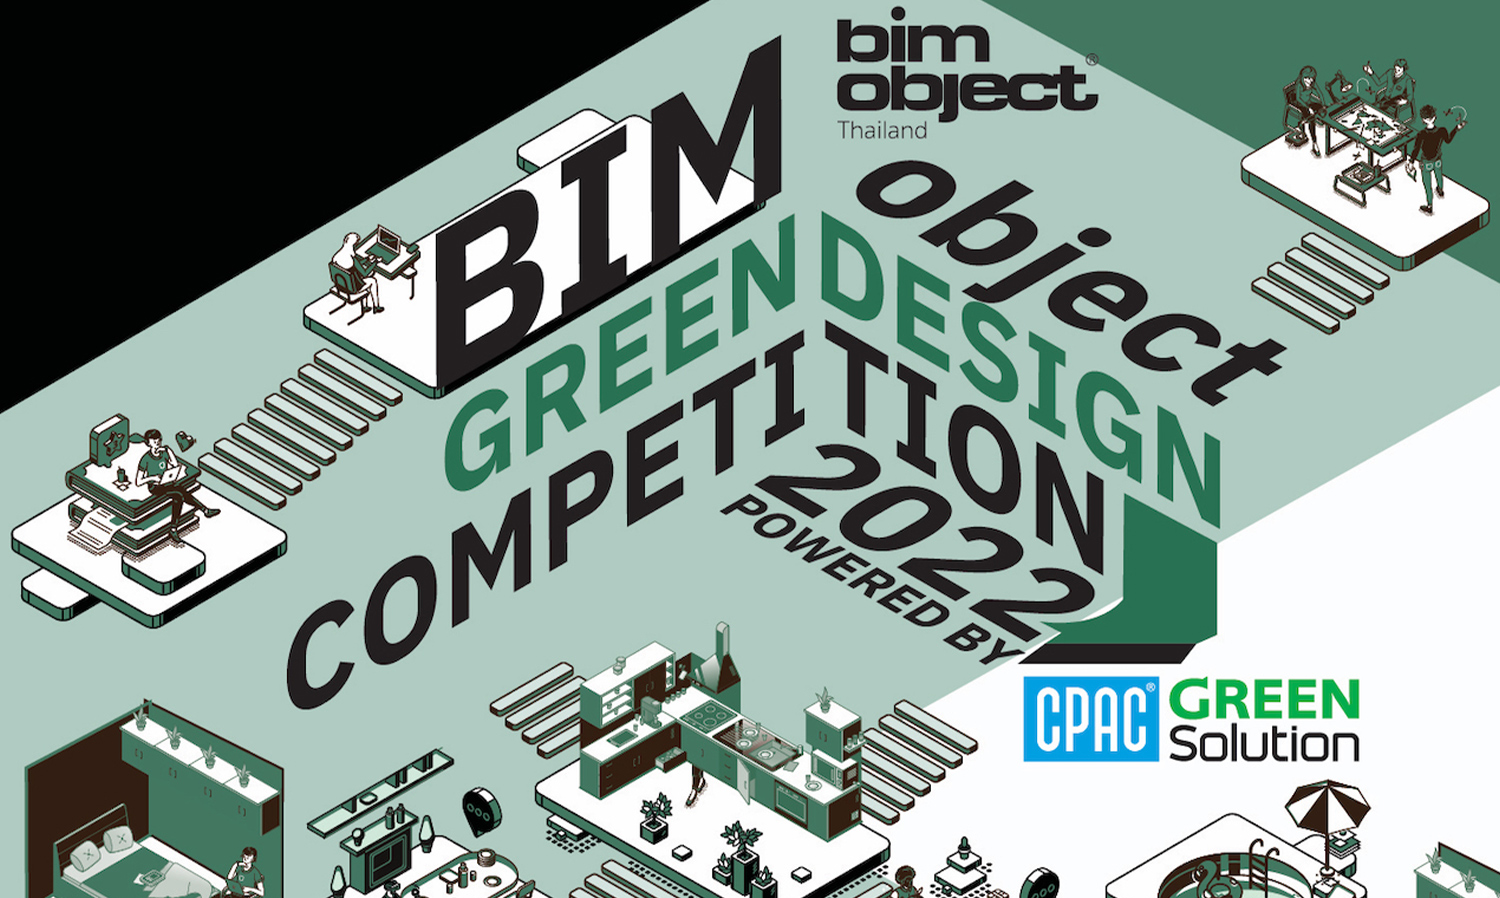 โค้งสุดท้ายของการส่งผลงานประกวดออกแบบ BIMobject Green Design Competition 2022 ชิงเงินรางวัลกว่า 400,000 บาท ถึงวันที่ 18 ก.ค.นี้ เท่านั้น!